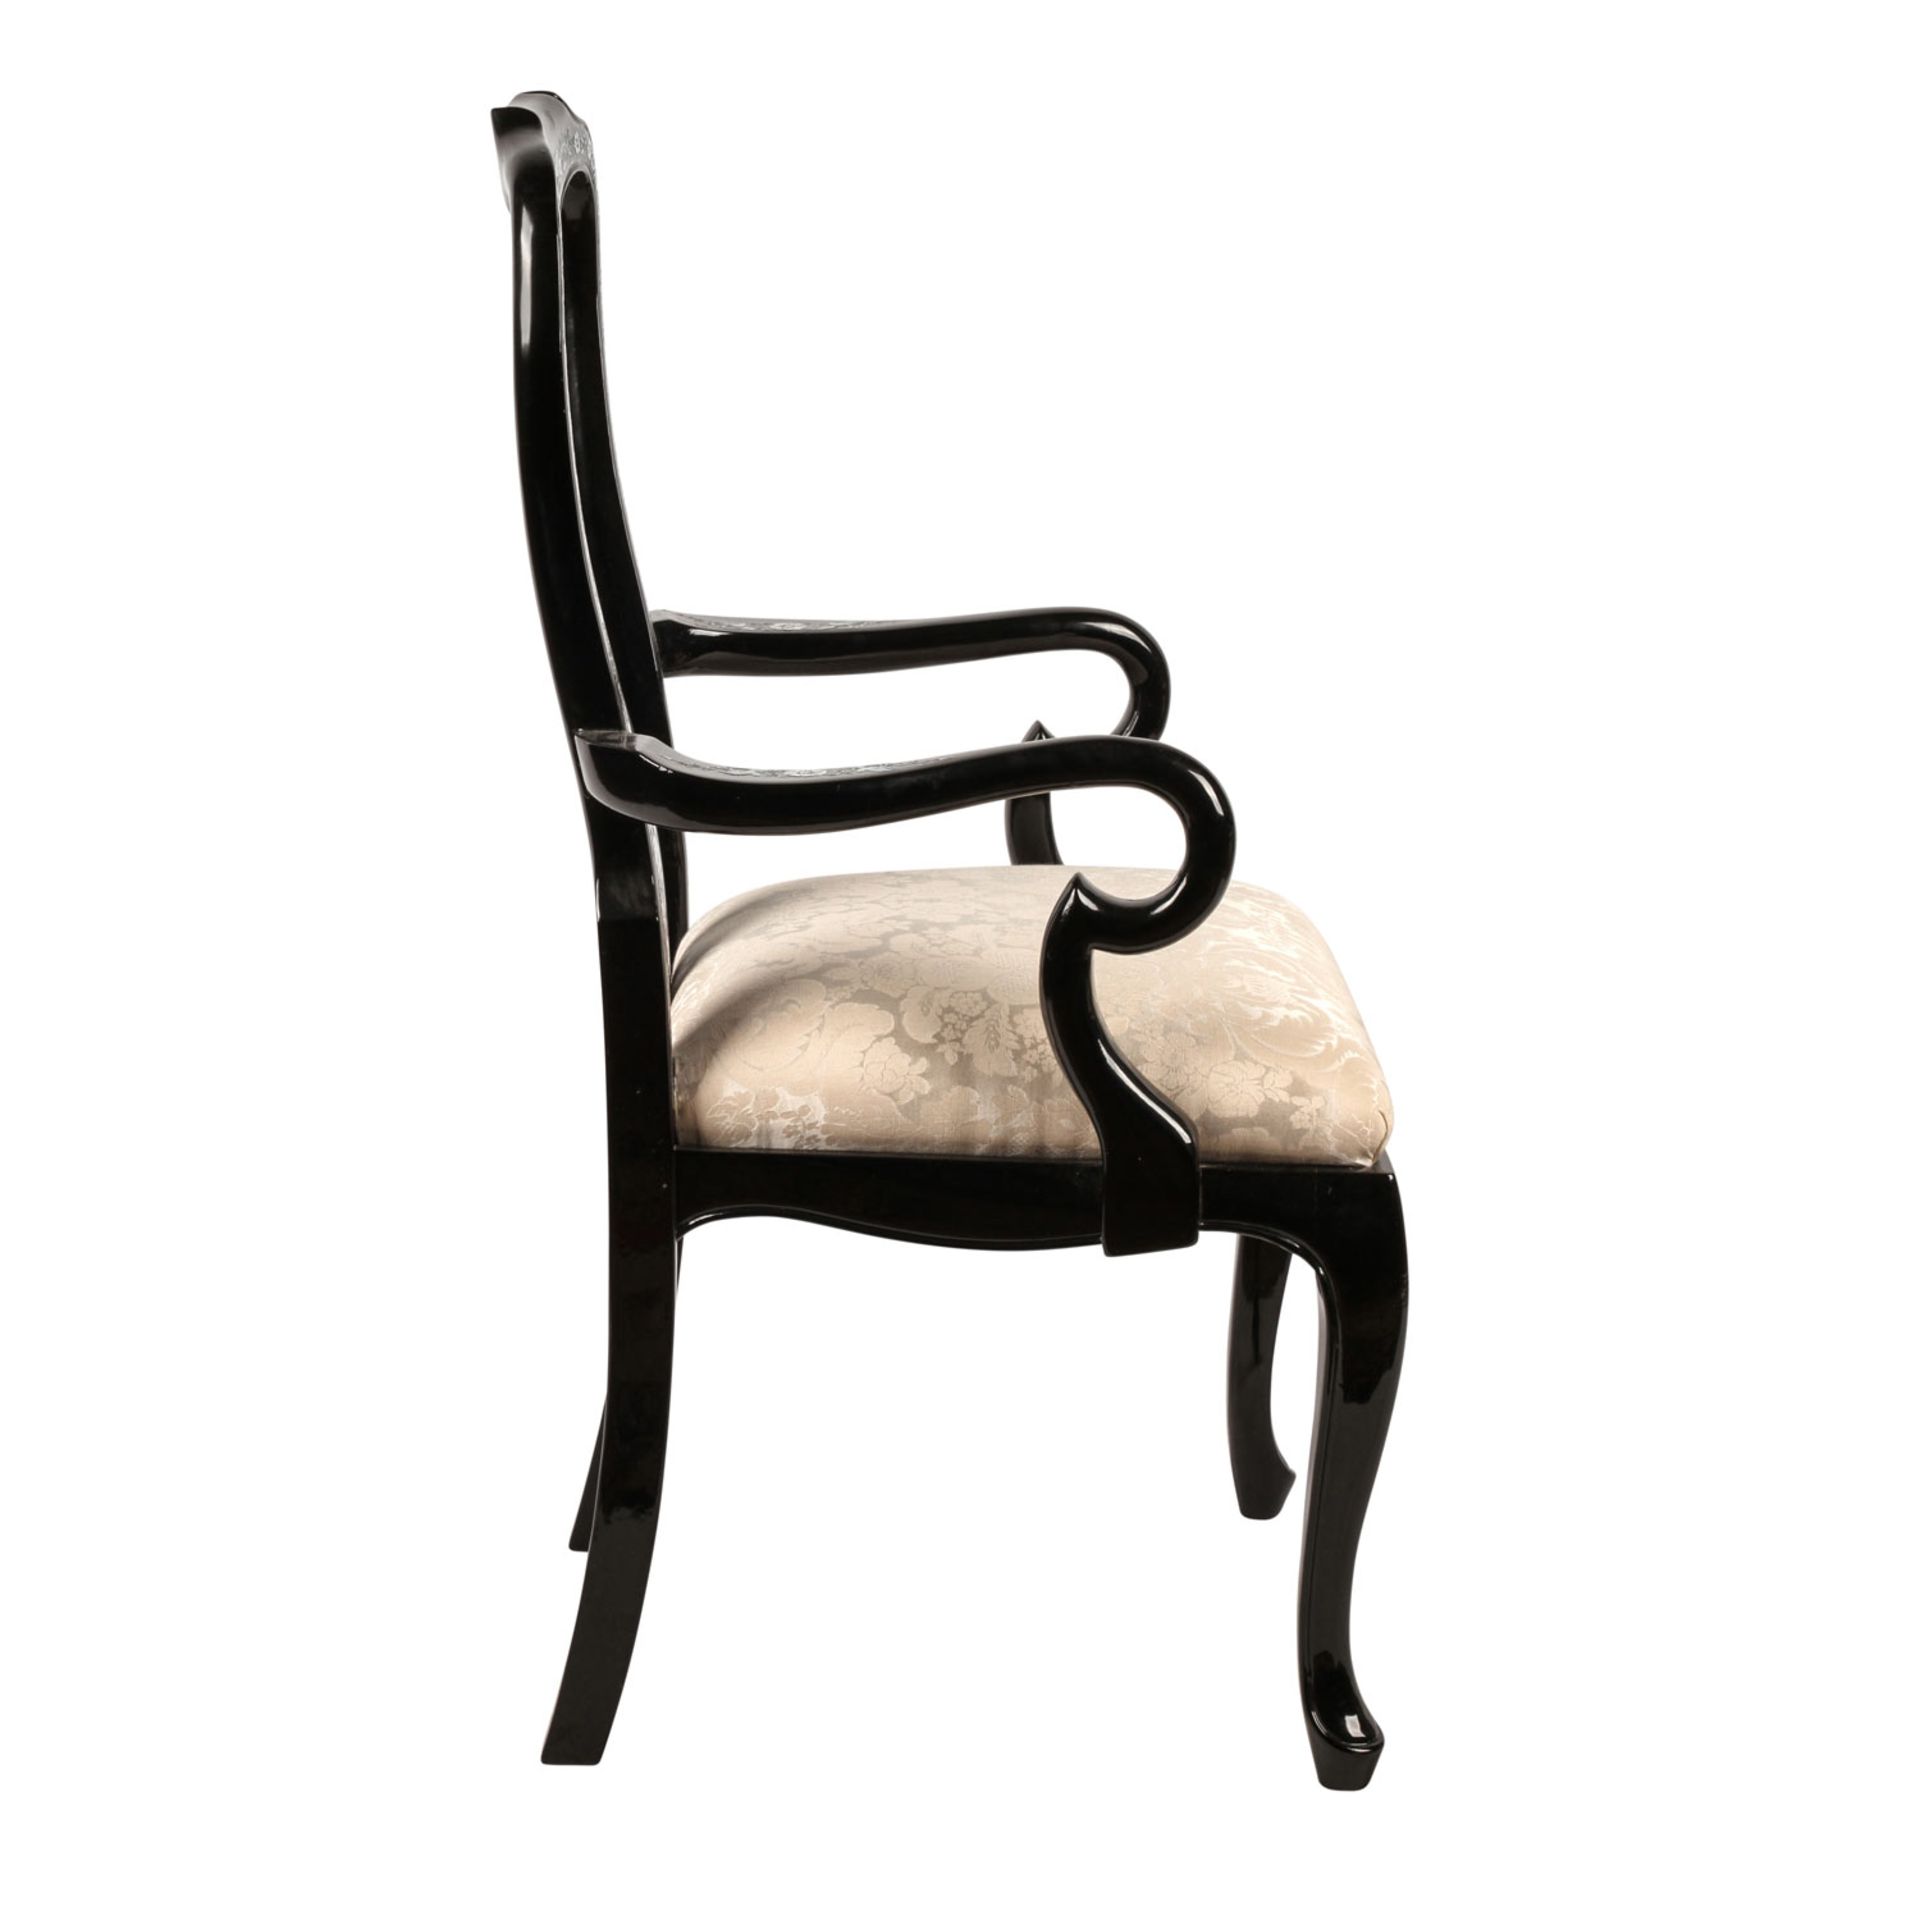 Schwarzlack-Stuhl. CHINA, 20. Jh.Holz, schwarz lackiert und mit Perlmuttintarsien verziert. - Image 5 of 6